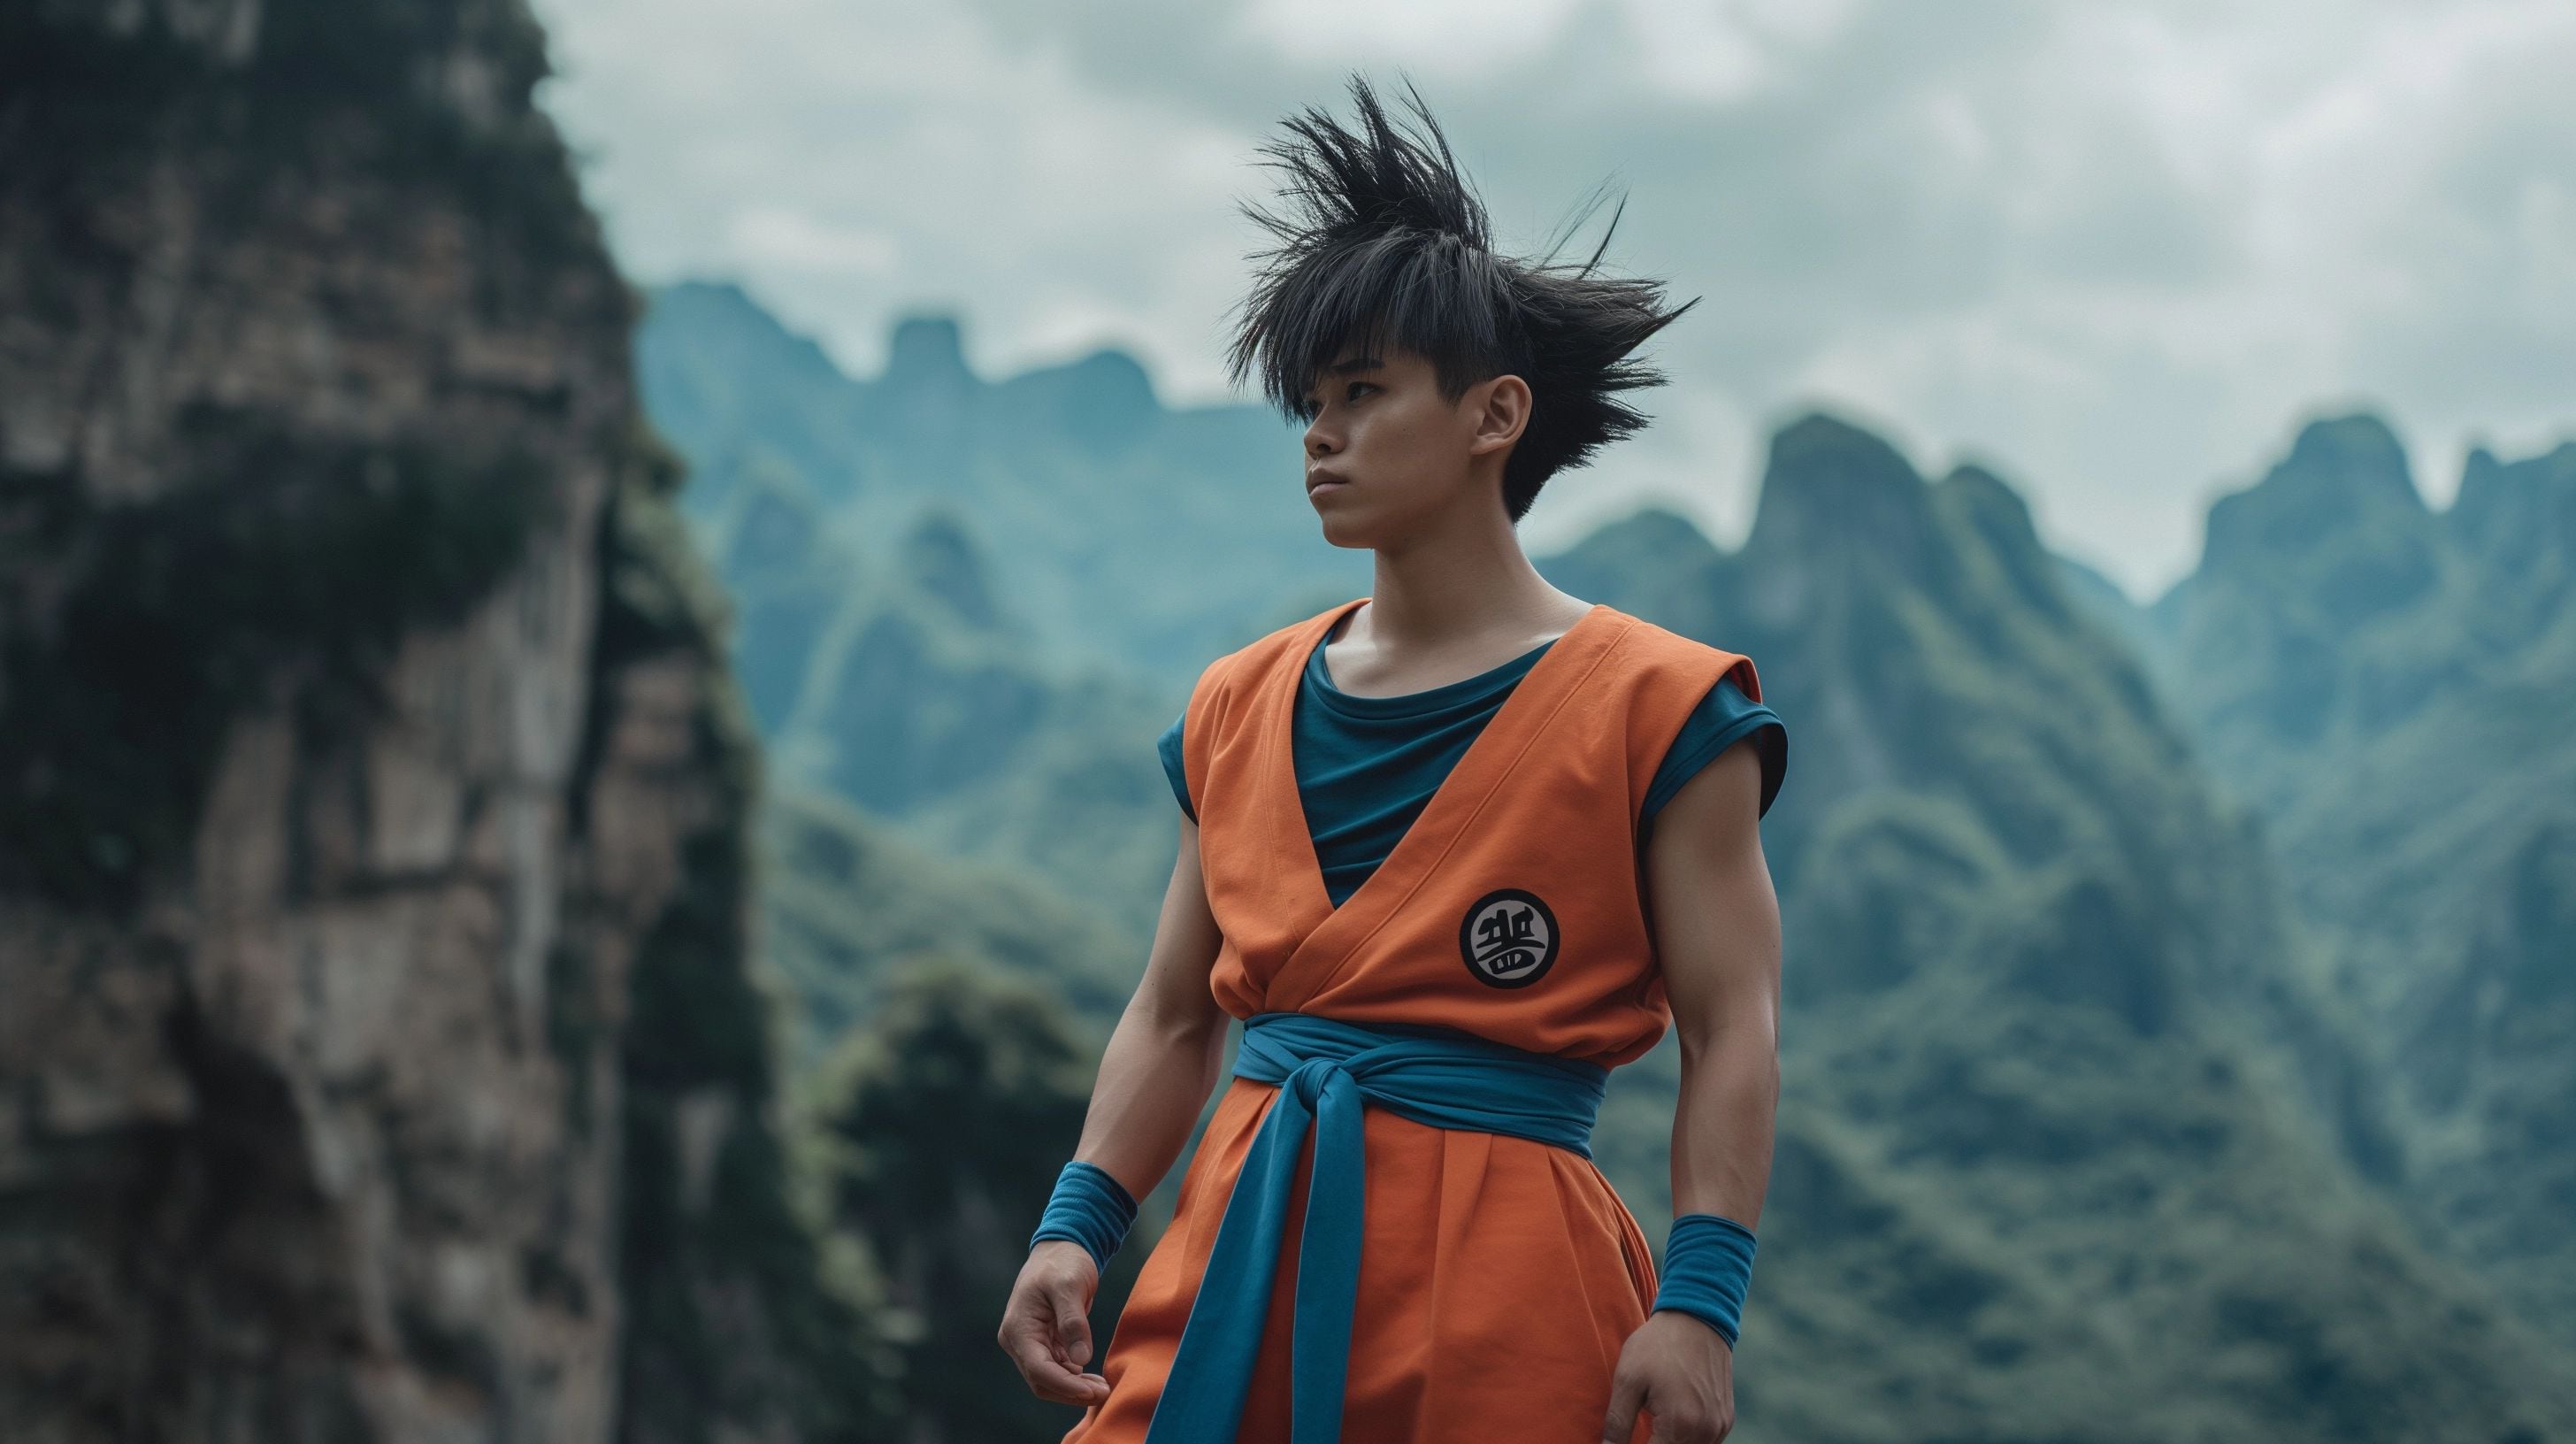 Retrato de Goku, de la serie japonesa Dragon Ball, recreado por inteligencia artificial para parecer una persona real, respetando el estilo de Akira Toriyama. Destaca la fusión entre el anime y la vida real. (Imagen ilustrativa Infobae)